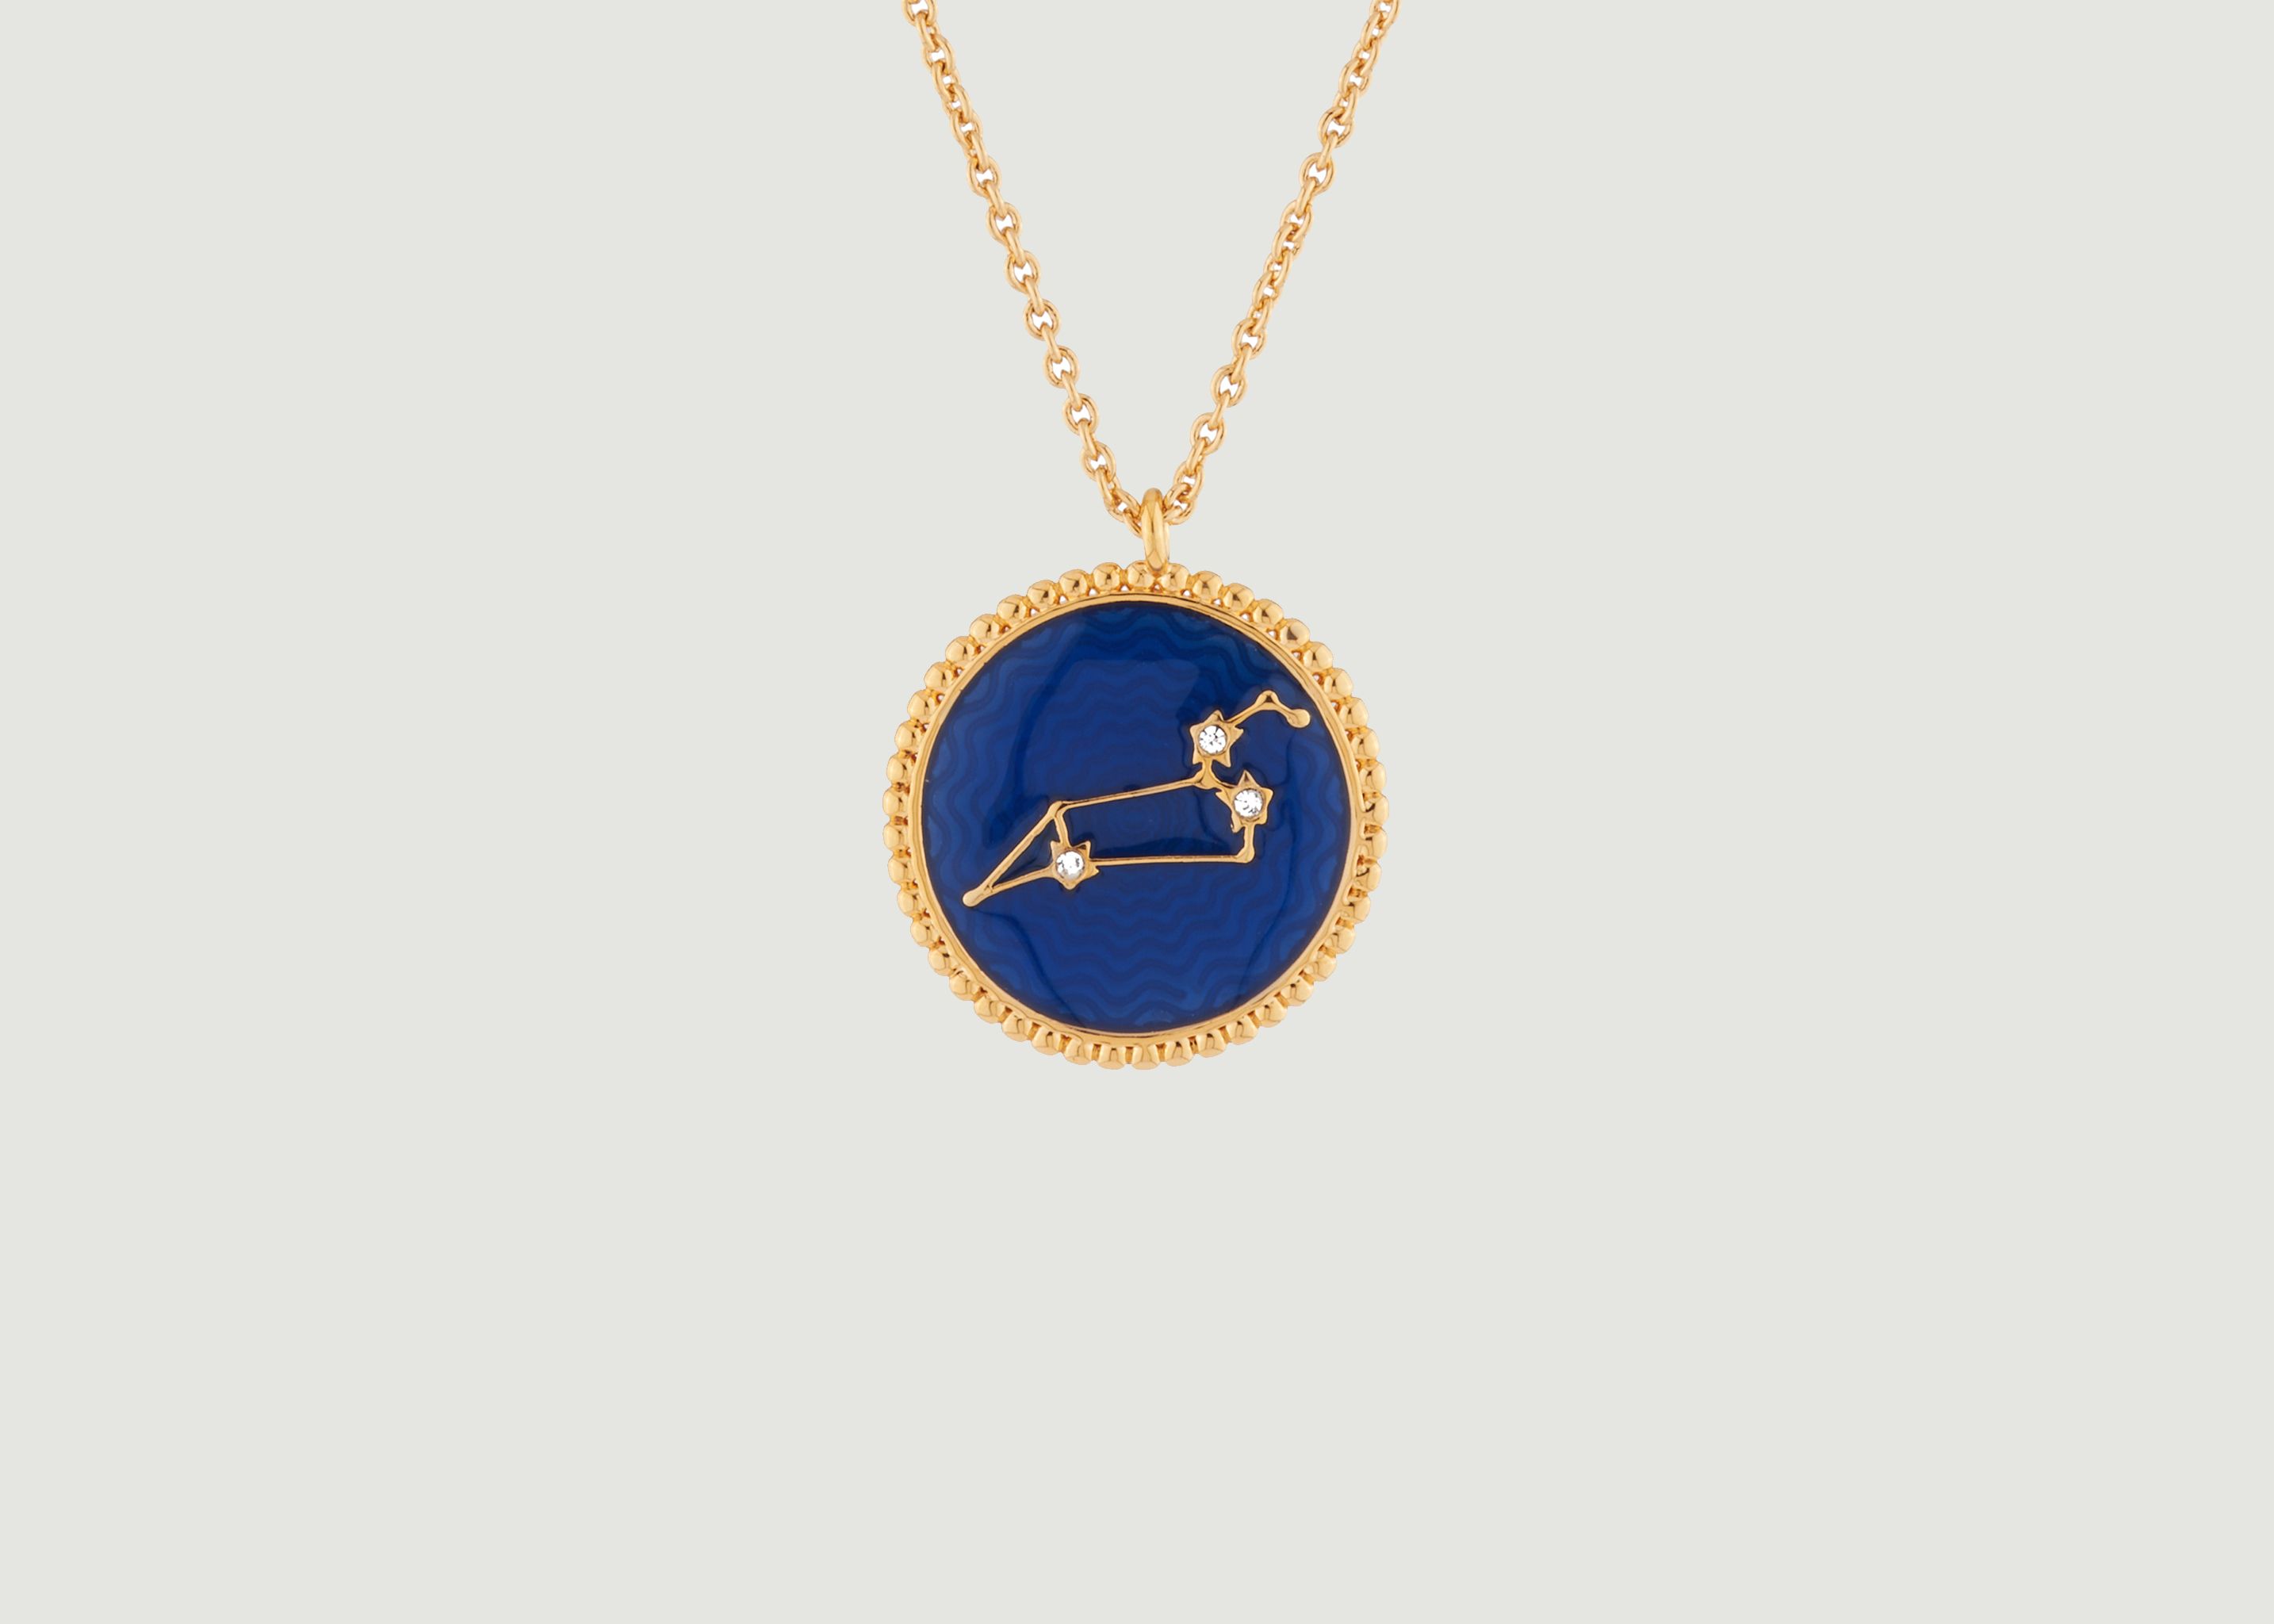 Collier avec pendentif signe astrologique Lion - Les Néréides